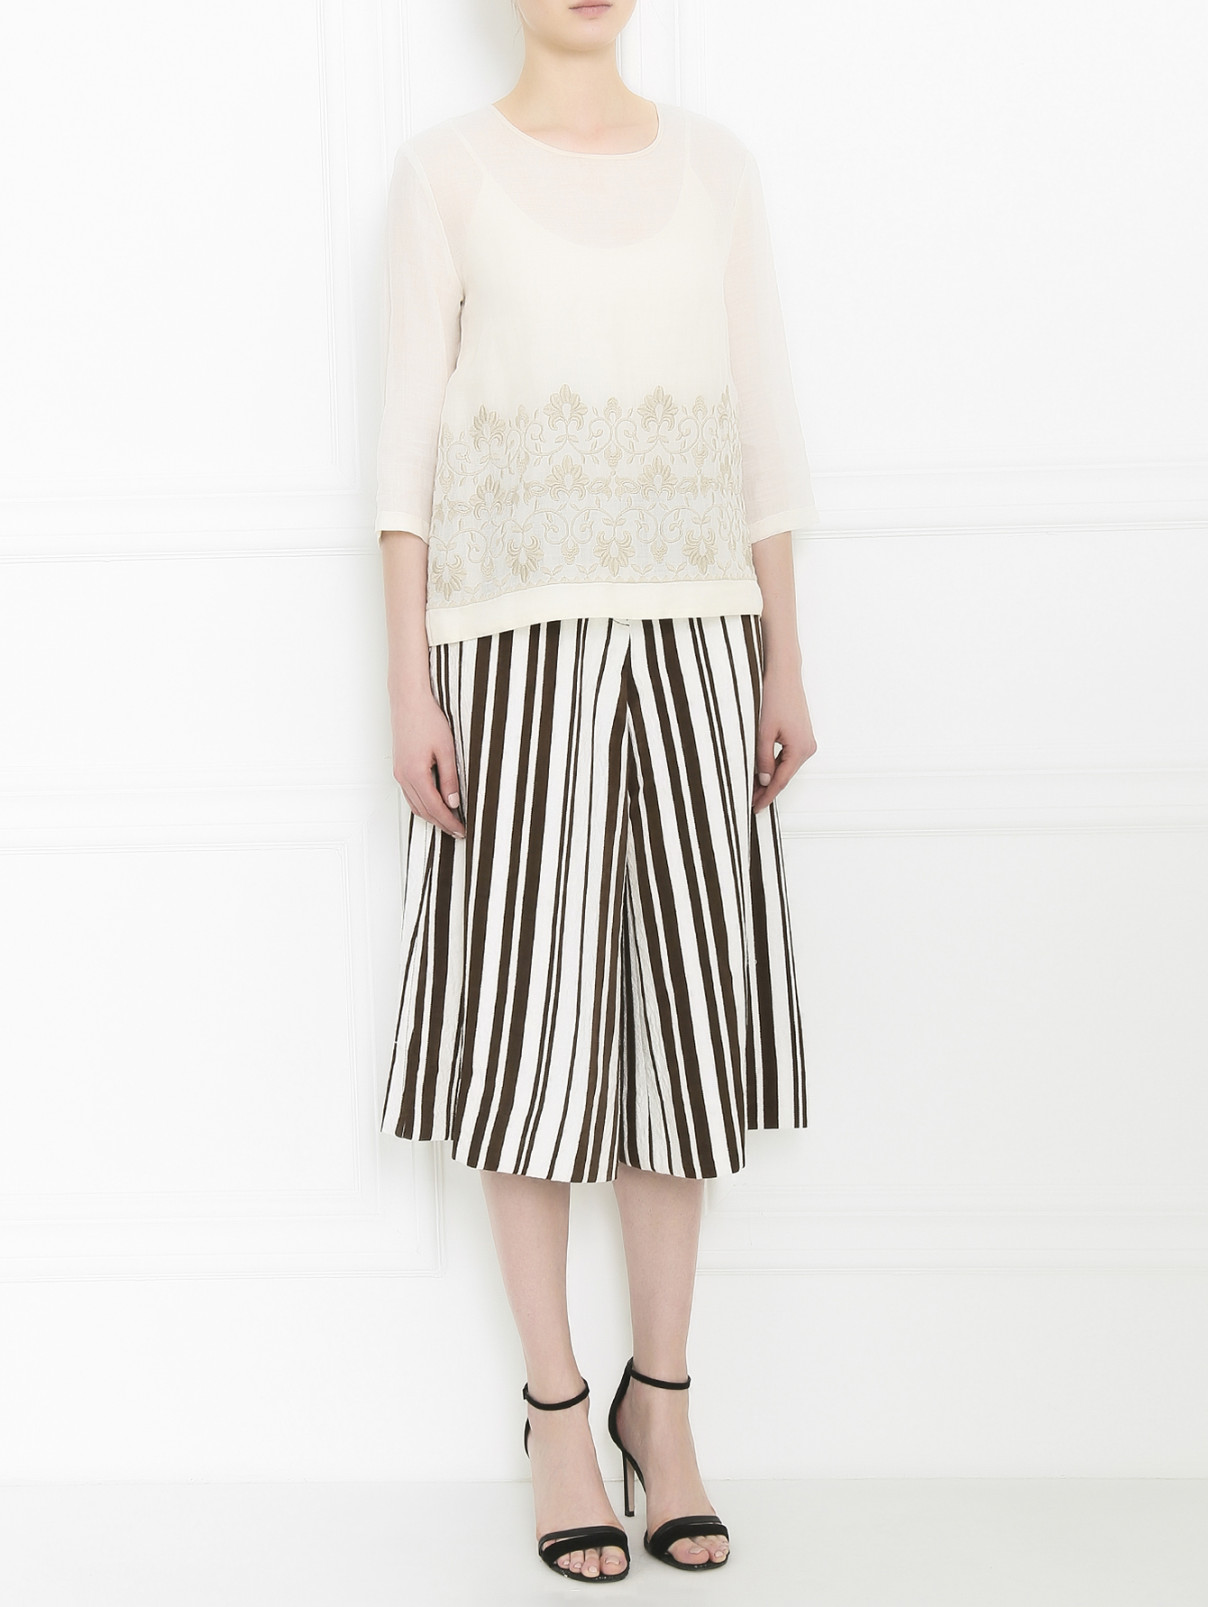 Блуза с декоративной вышивкой Max Mara  –  Модель Общий вид  – Цвет:  Белый